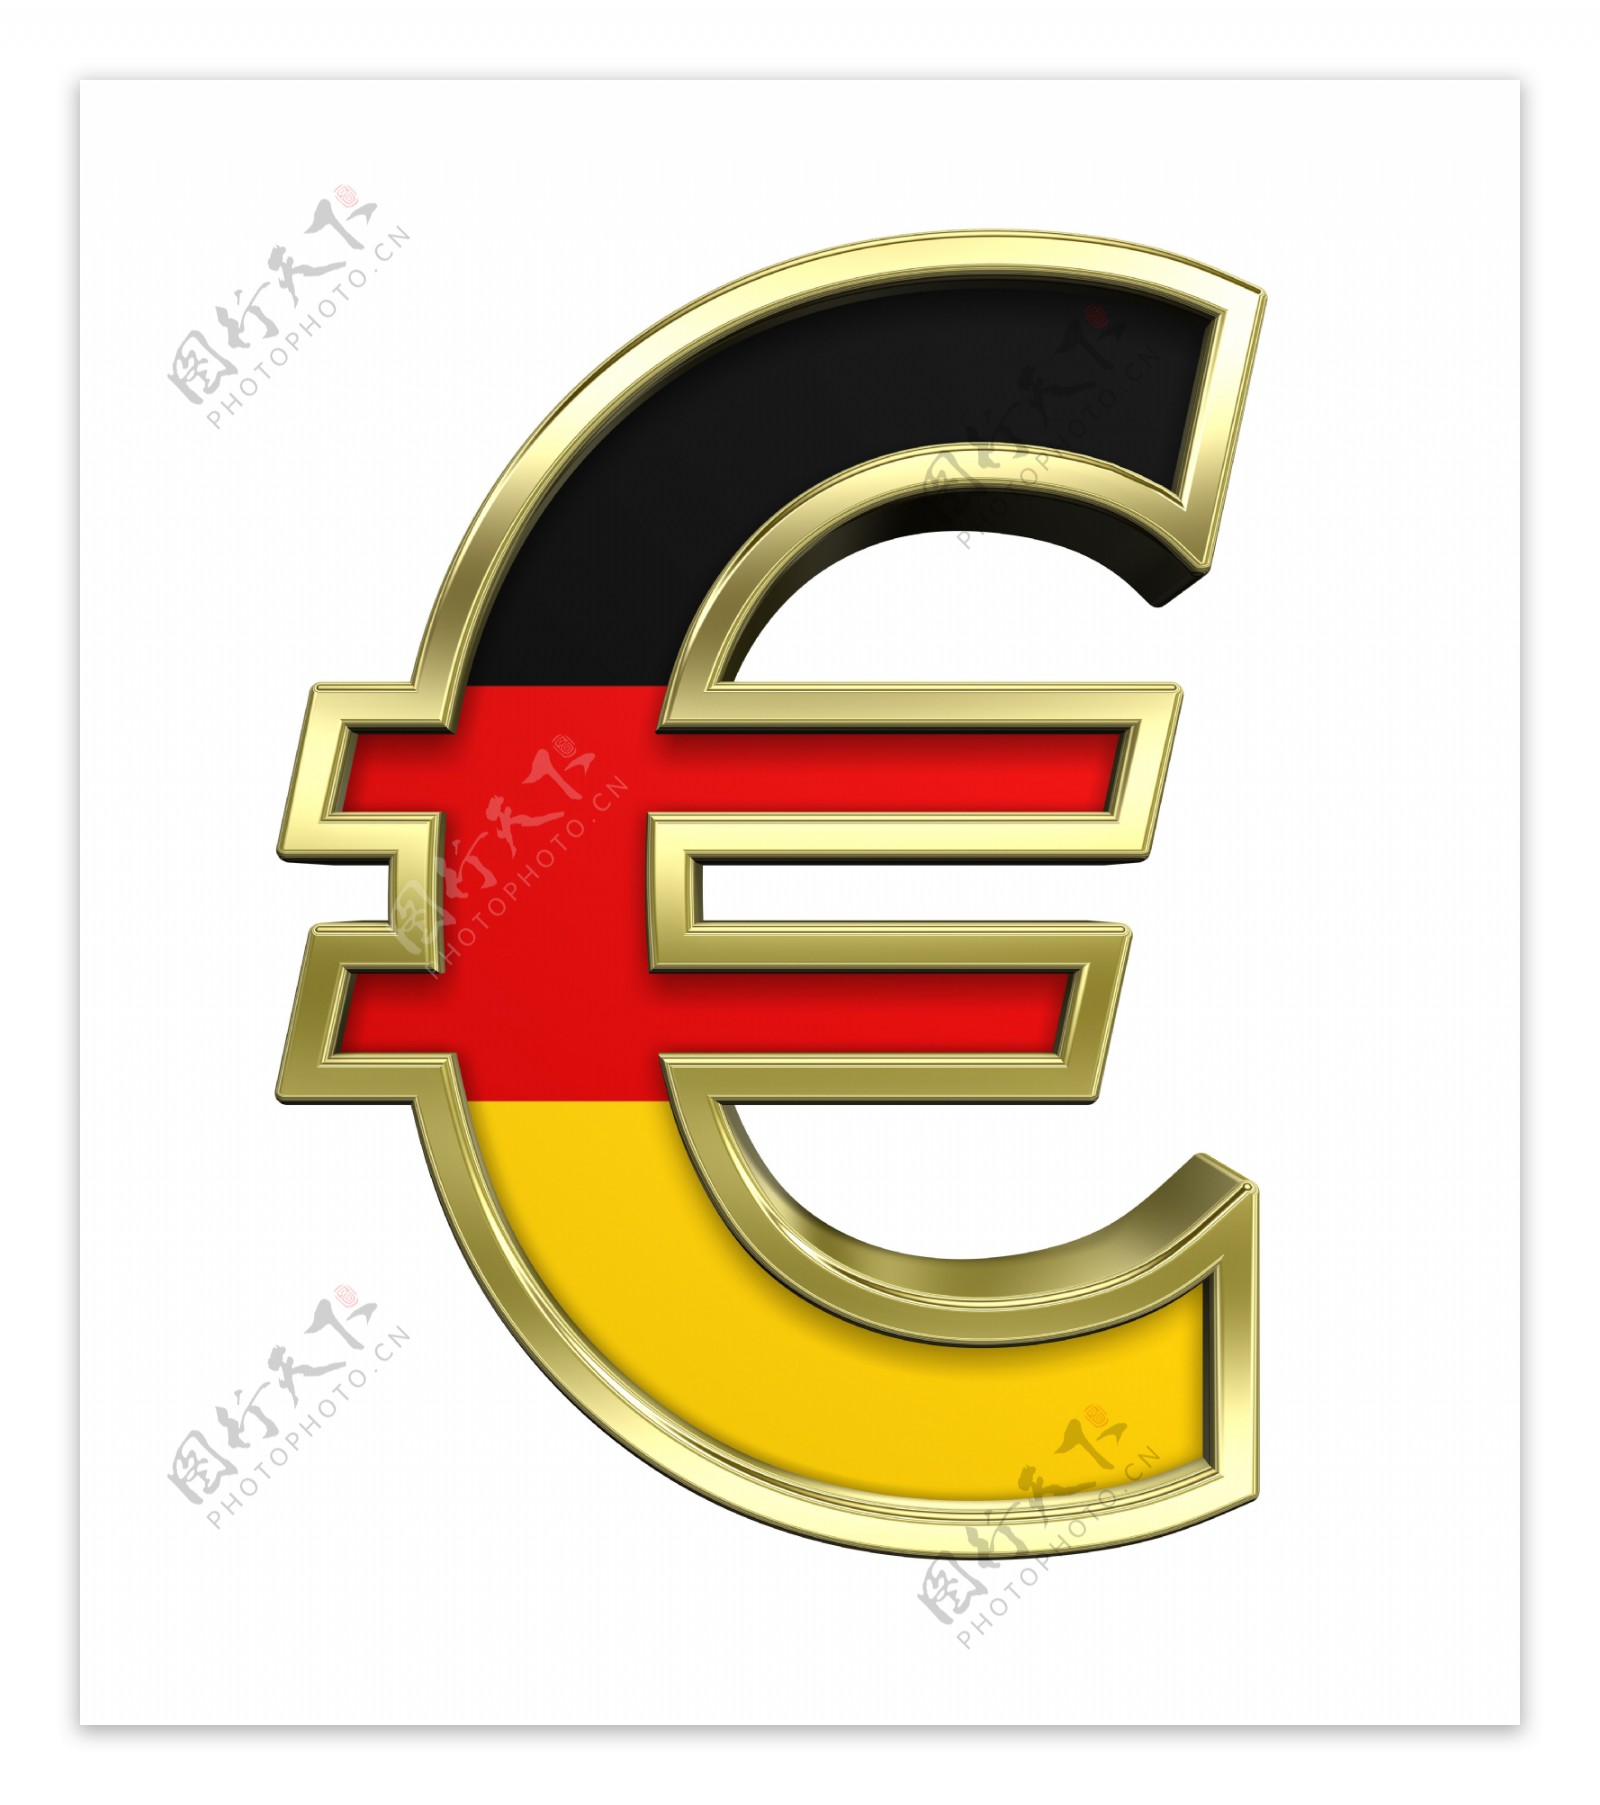 欧元对人名币 _排行榜大全